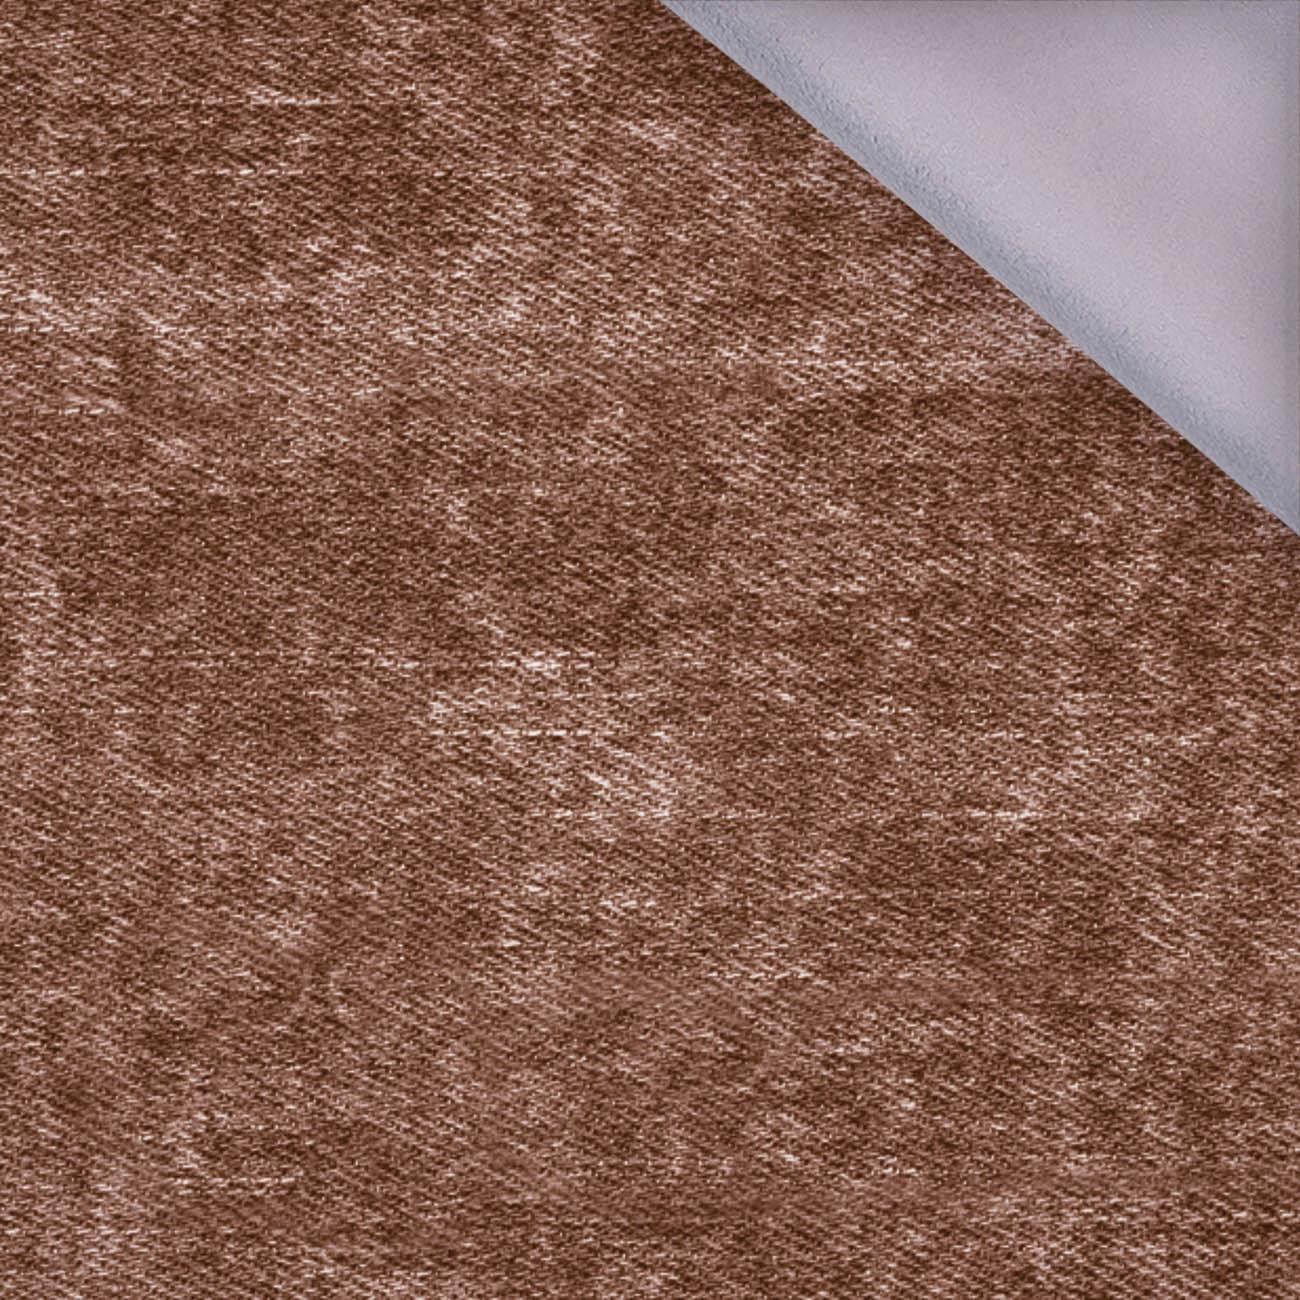 PRZECIERANY JEANS (brązowy) - softshell